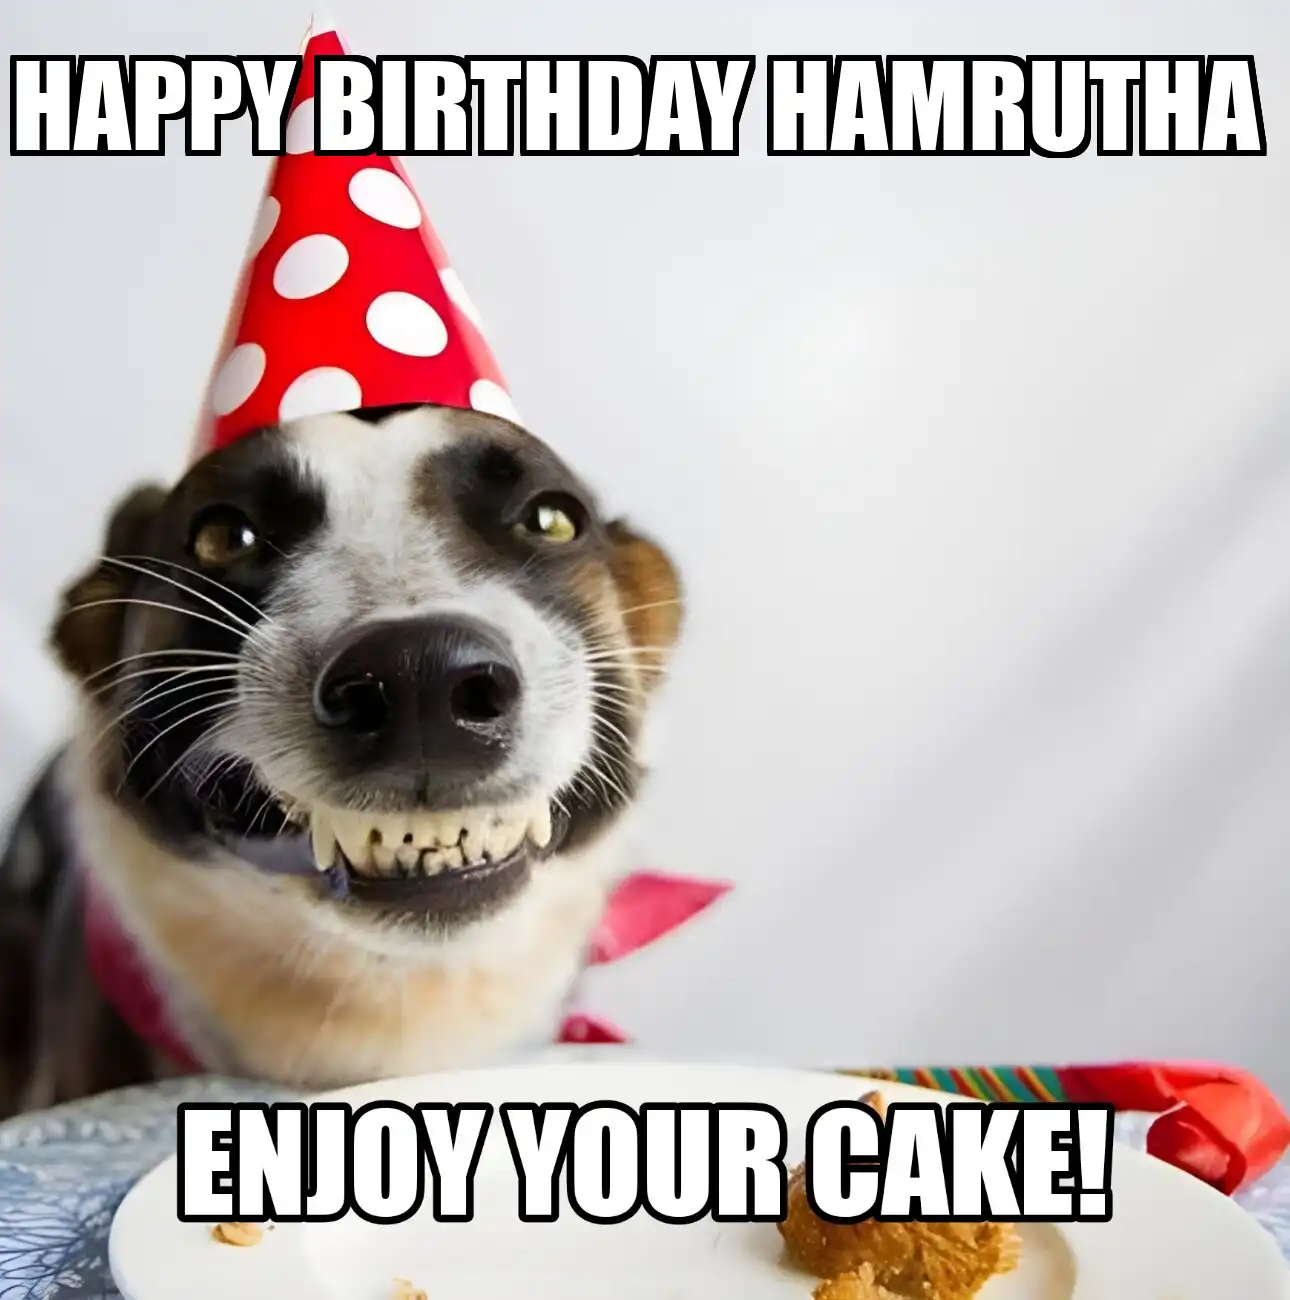 Happy Birthday Hamrutha Enjoy Your Cake Dog Meme